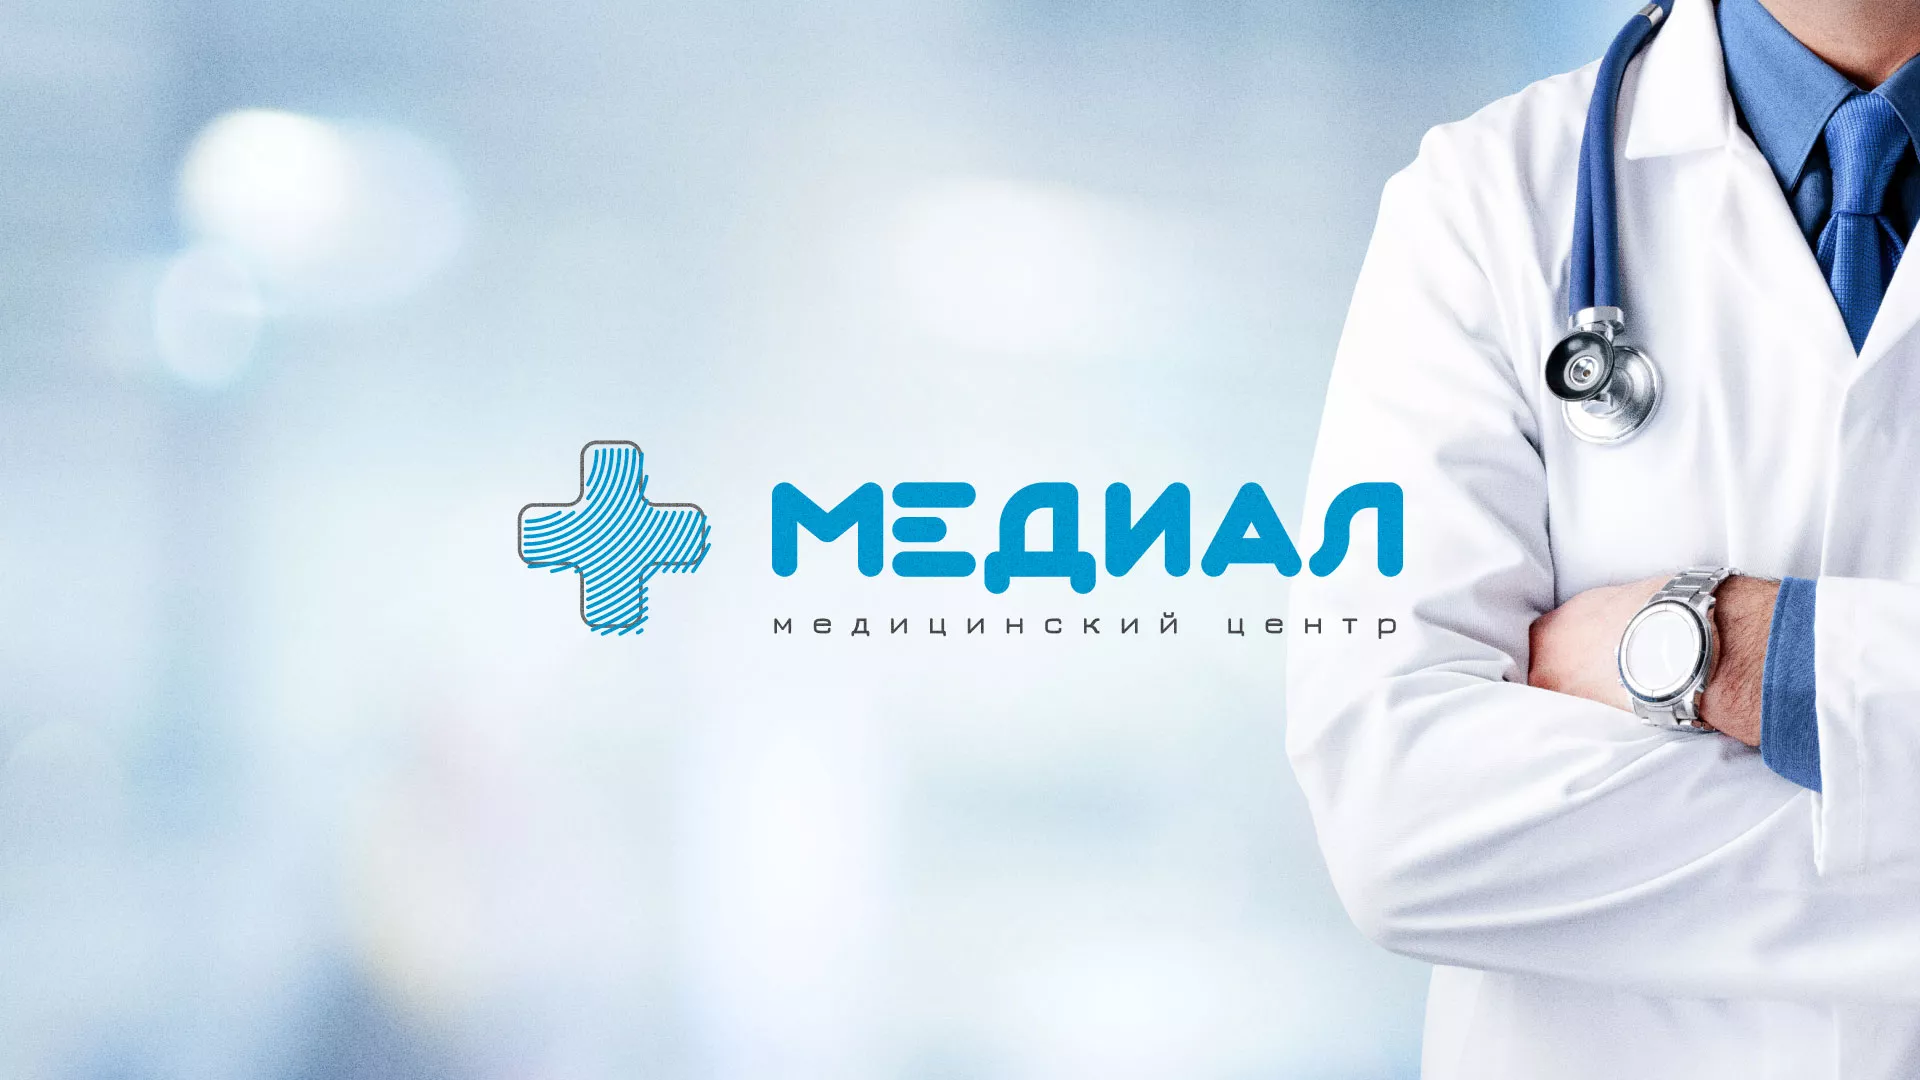 Создание сайта для медицинского центра «Медиал» в Княгинино